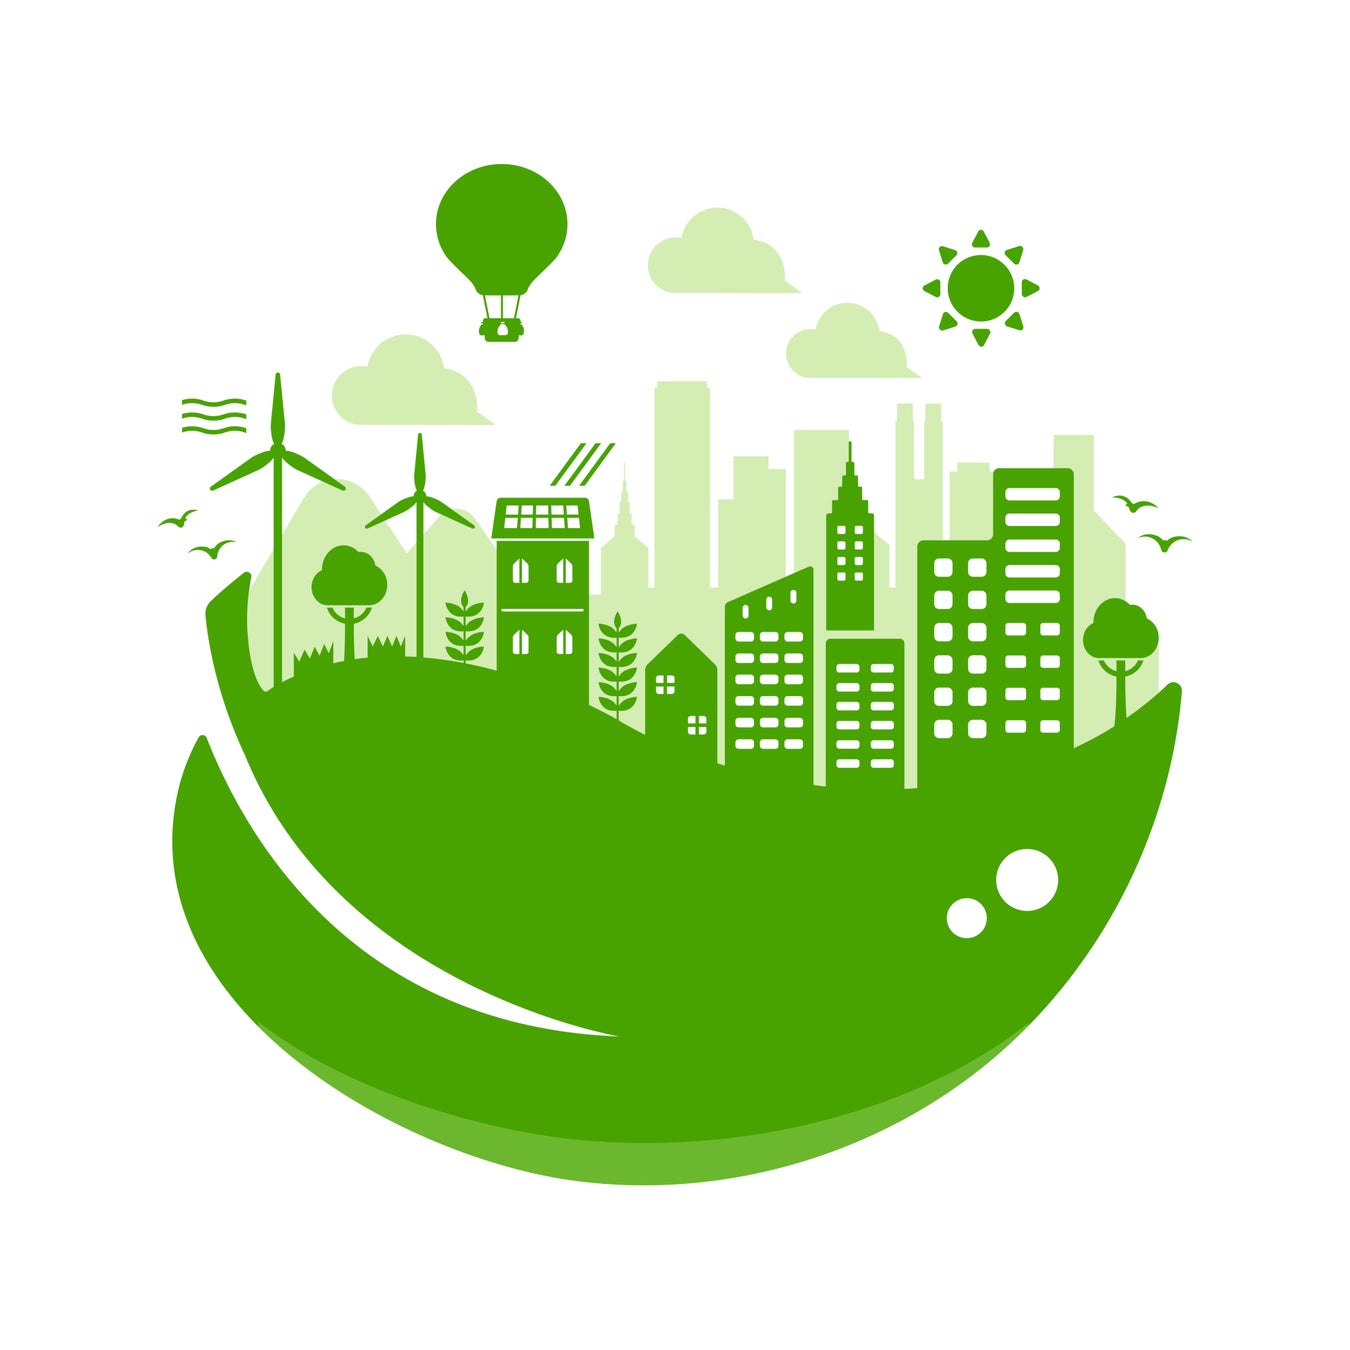 太陽光発電所投資プラットフォーム「SOLSEL」を展開するエレビスタが、環境省「脱炭素経営促進ネットワーク」に目標設定会員として加盟のサブ画像1